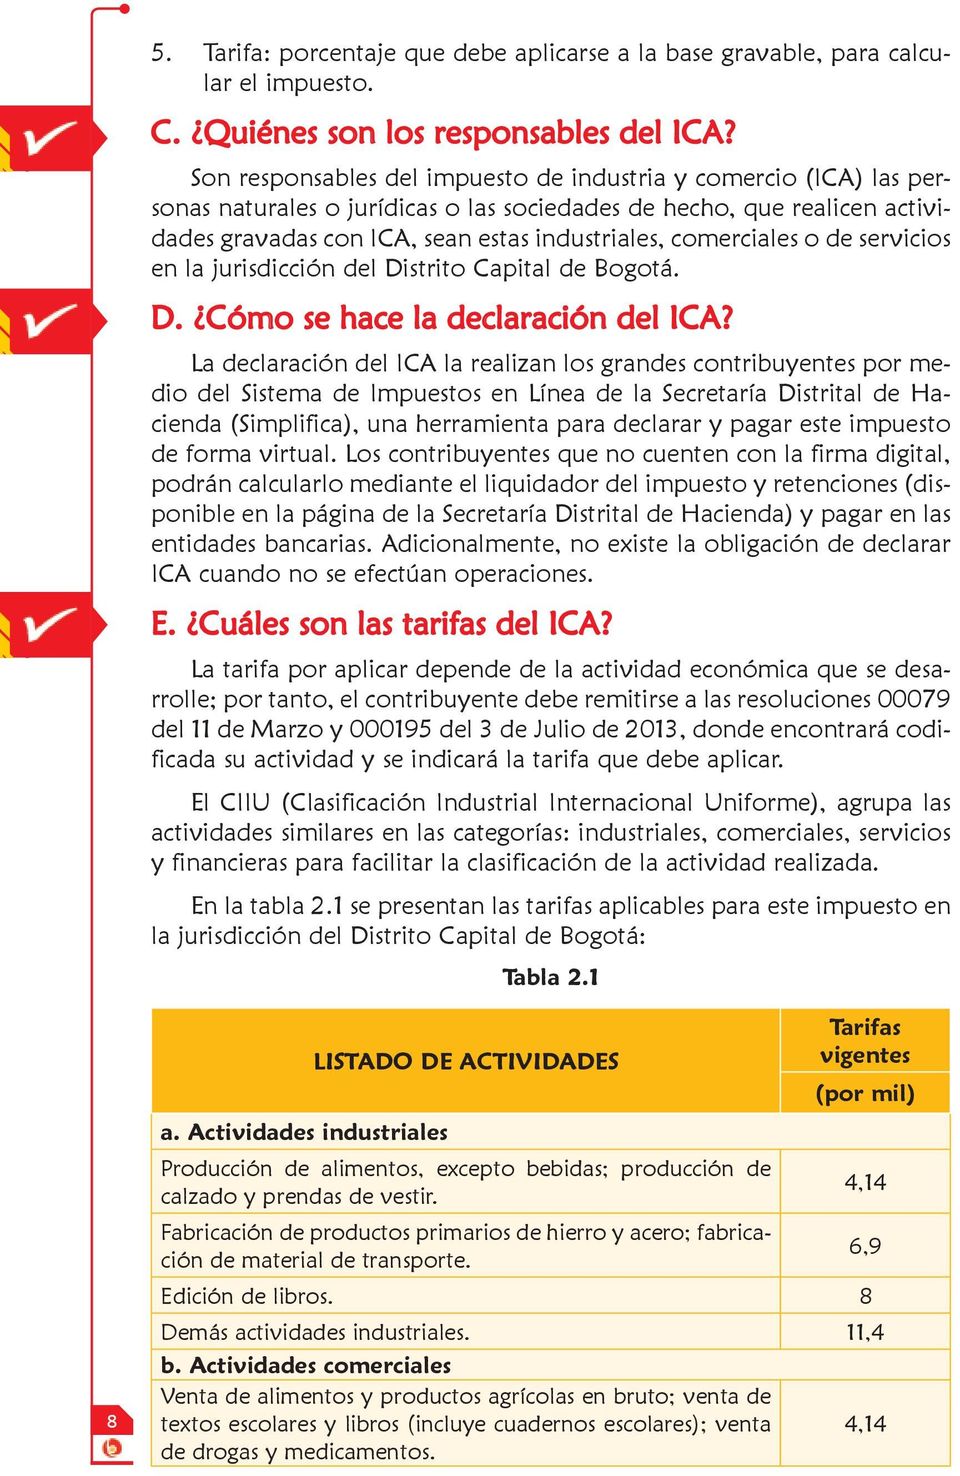 comerciales o de servicios en la jurisdicción del Distrito Capital de Bogotá. D. Cómo se hace la declaración del ICA?